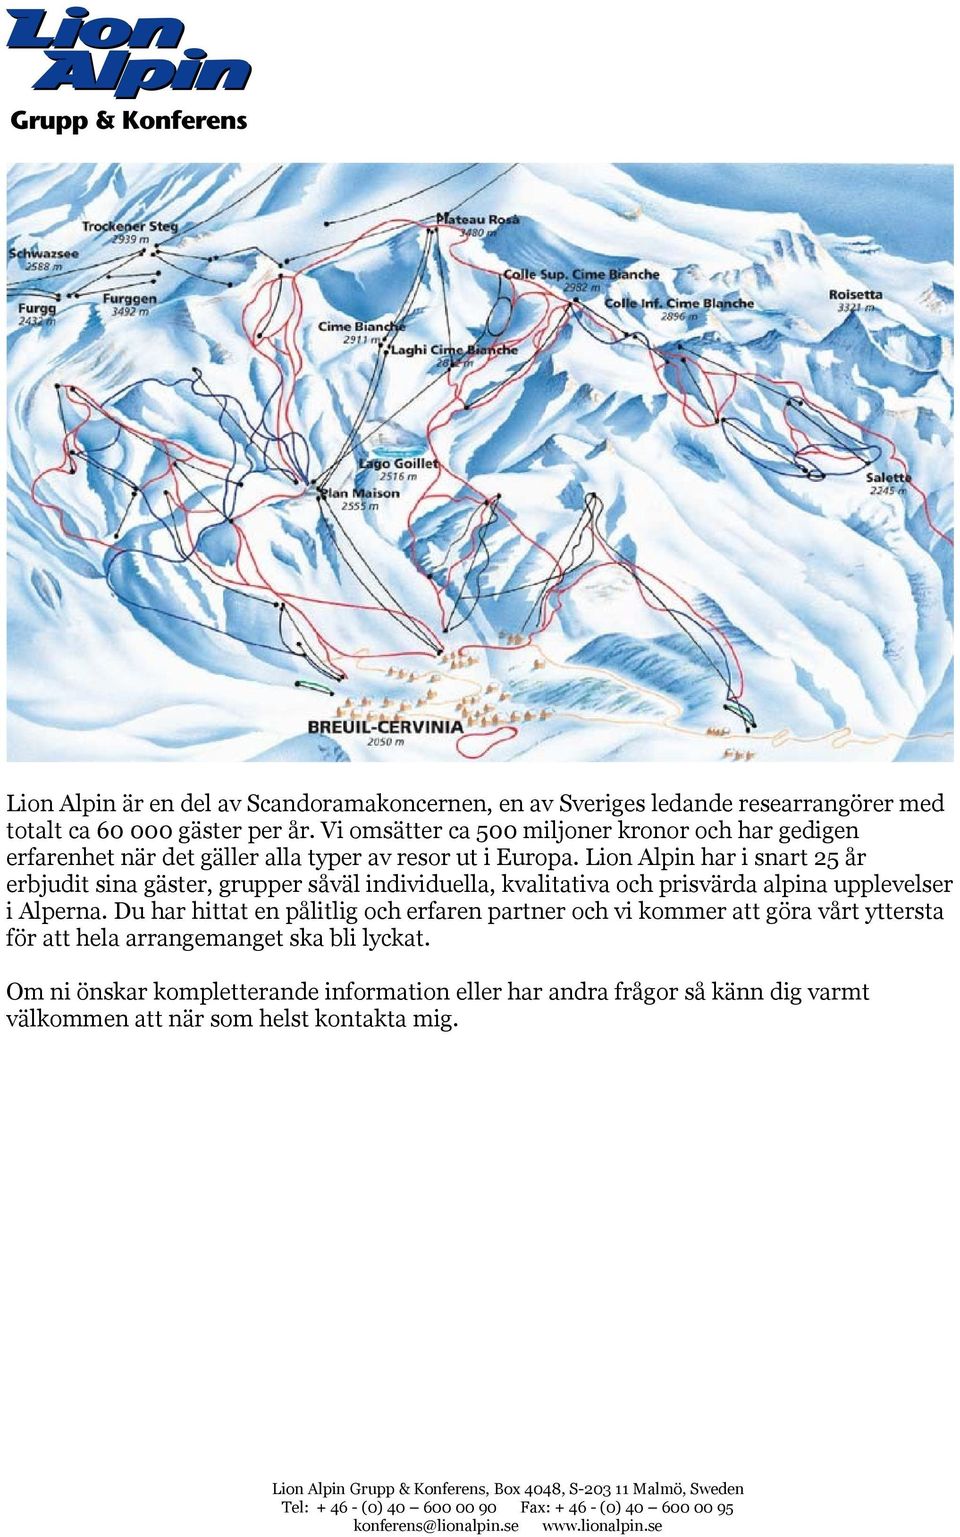 Lion Alpin har i snart 25 år erbjudit sina gäster, grupper såväl individuella, kvalitativa och prisvärda alpina upplevelser i Alperna.